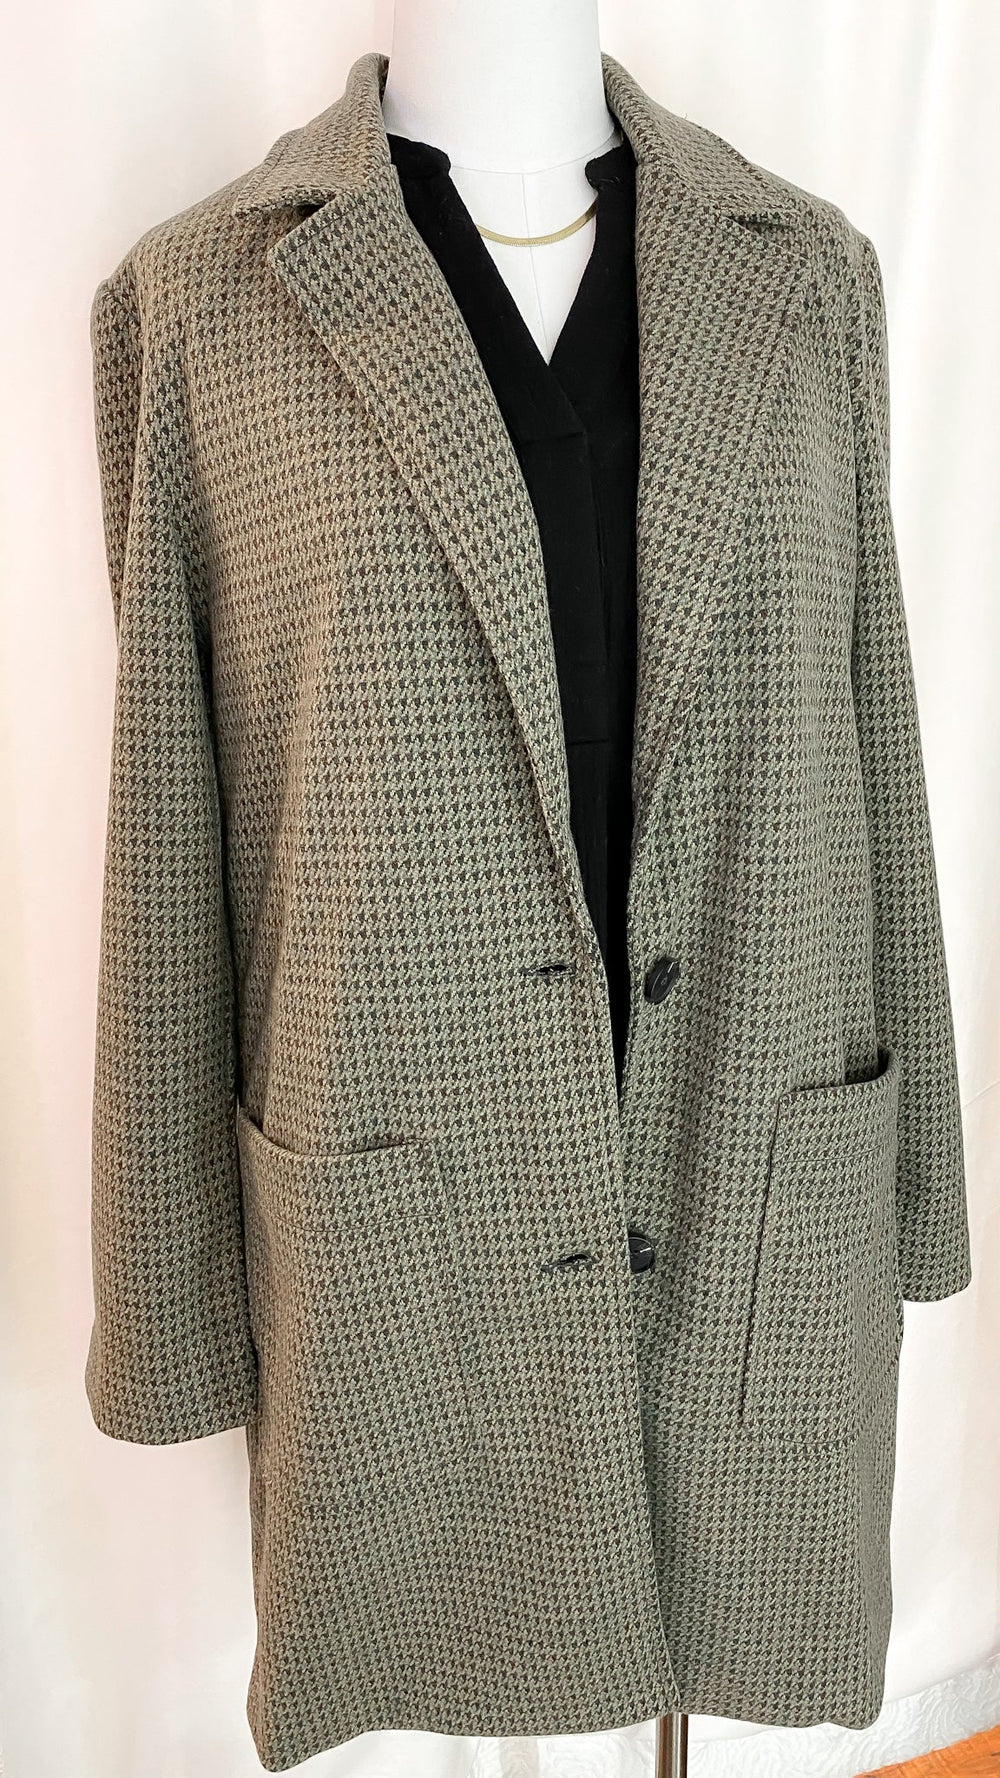 Boss Lady Houndstooth Check Coat - Coats & Jackets